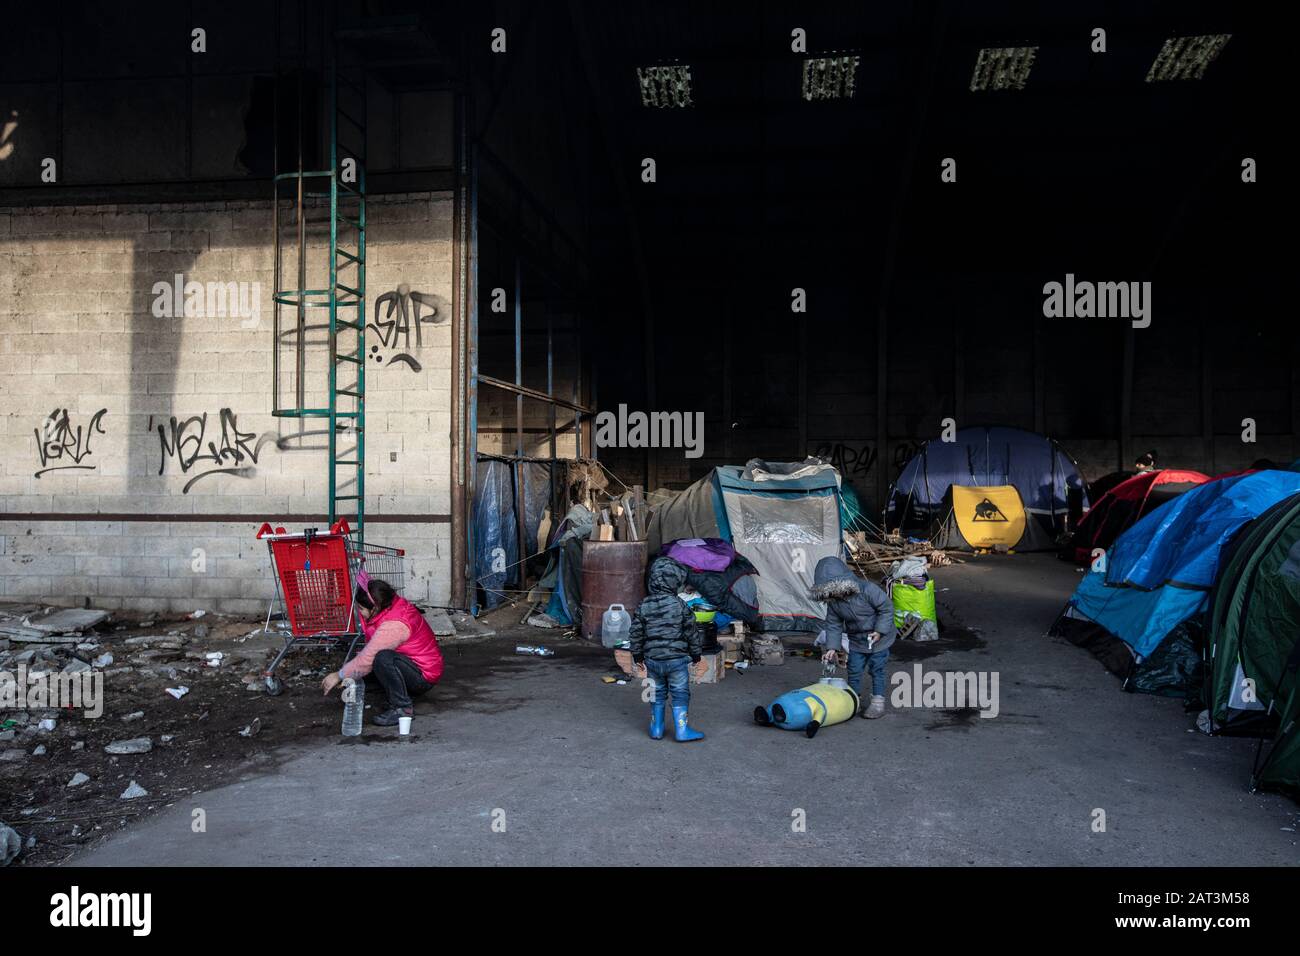 Les immigrants kurdes irakiens qui prennent refuge dans des tentes parmi les décombres d'un entrepôt abandonnée à la périphérie de Dunkerque alors qu'ils essaient de rejoindre la Grande-Bretagne. Banque D'Images